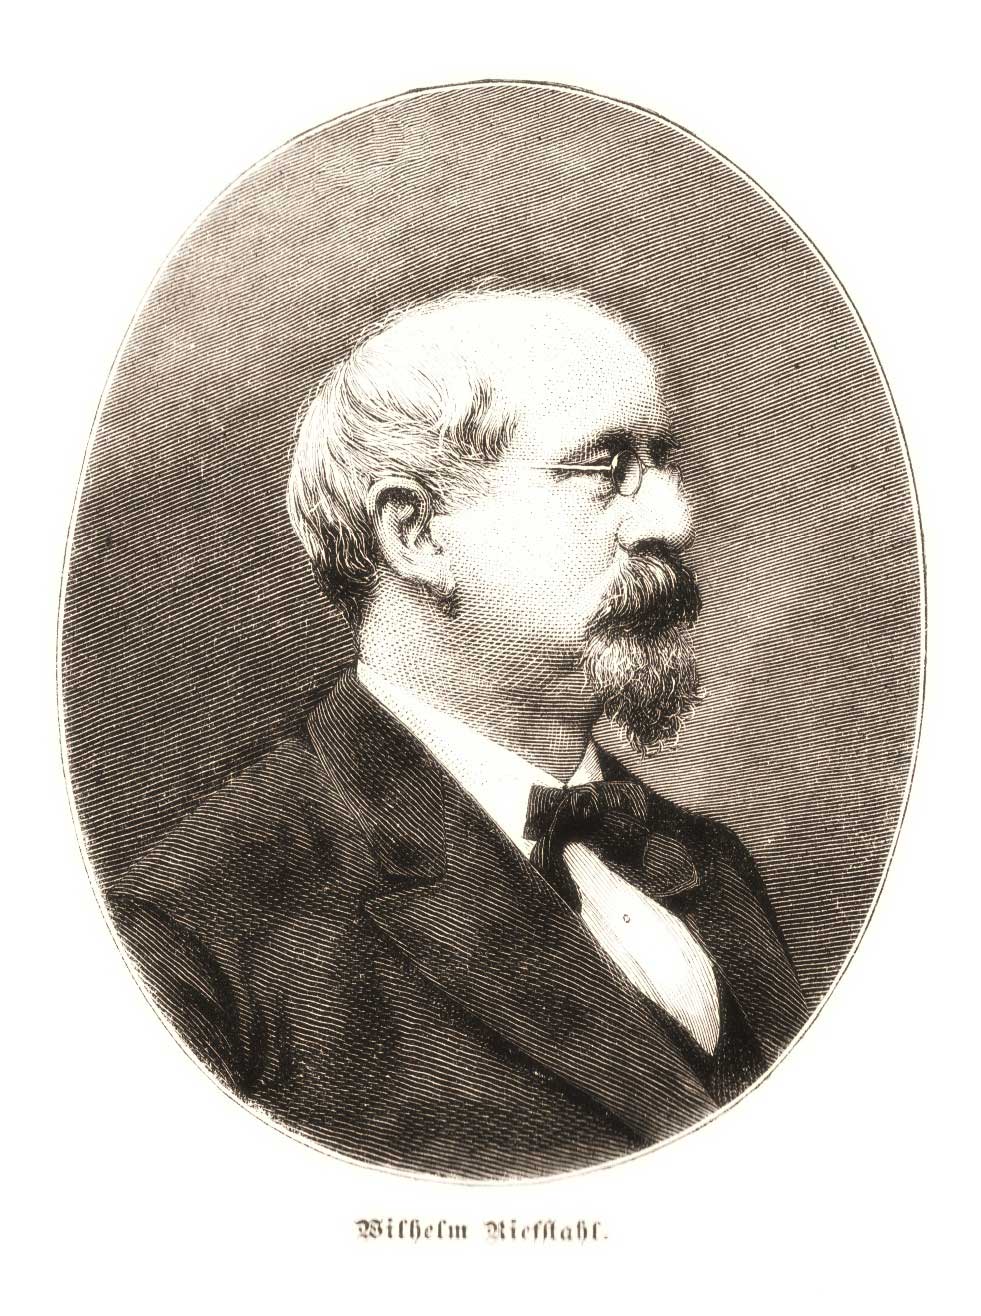 Riefstahl Wilhelm